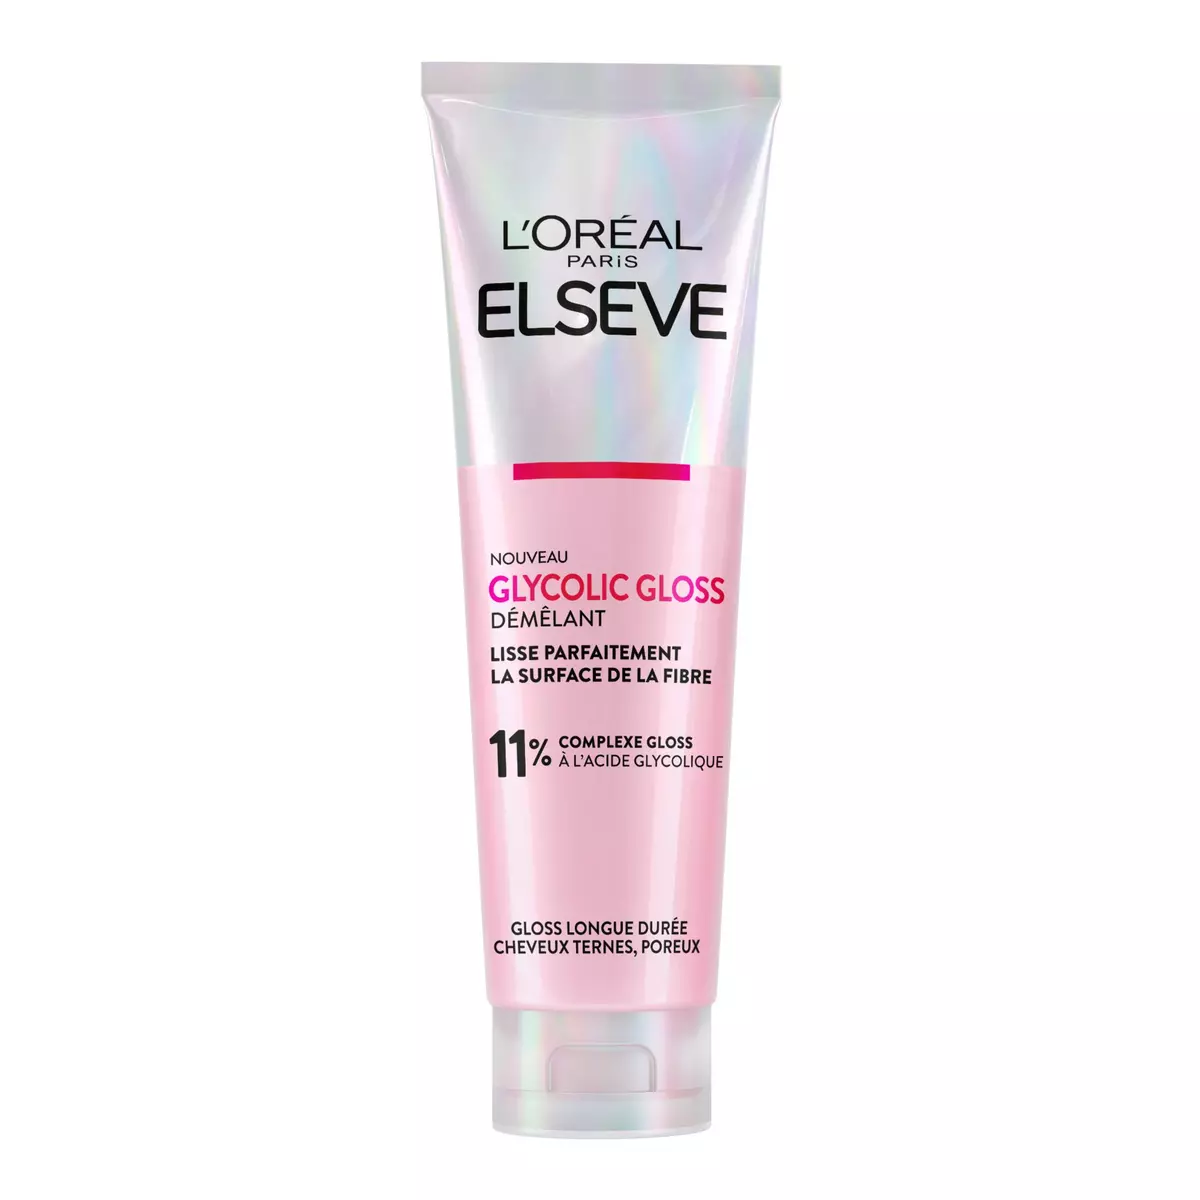 ELSEVE Glycolic Gloss Après-shampoing démêlant cheveux ternes poreux 150ml